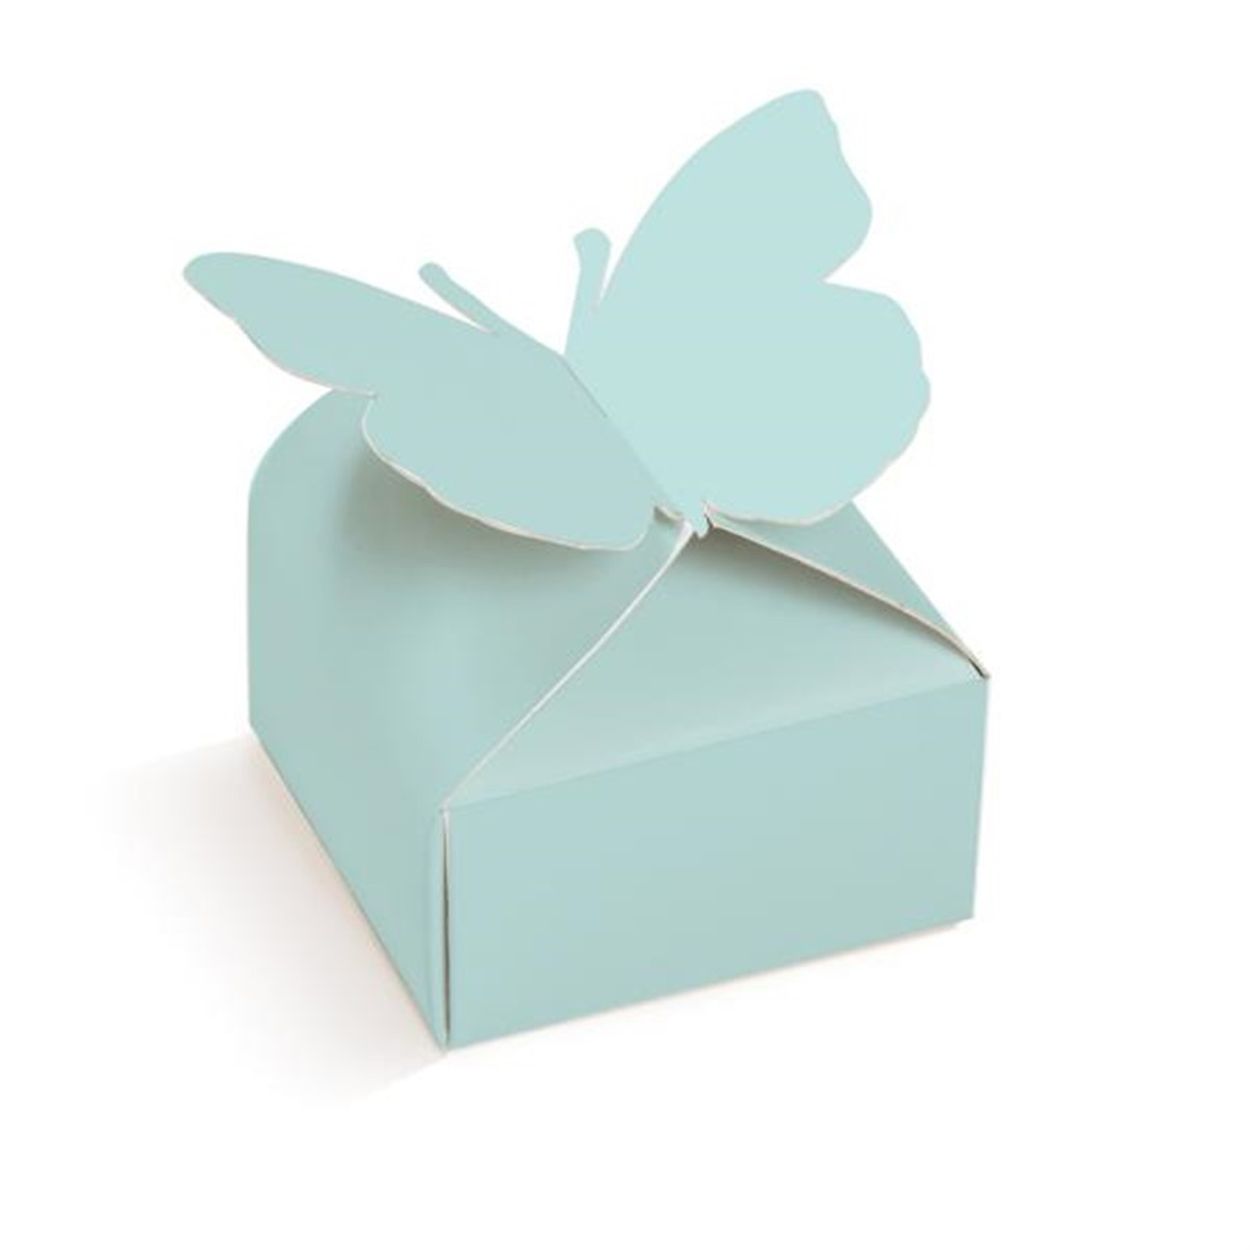 Bolo de aniversário branco decorado com borboletas azuis e